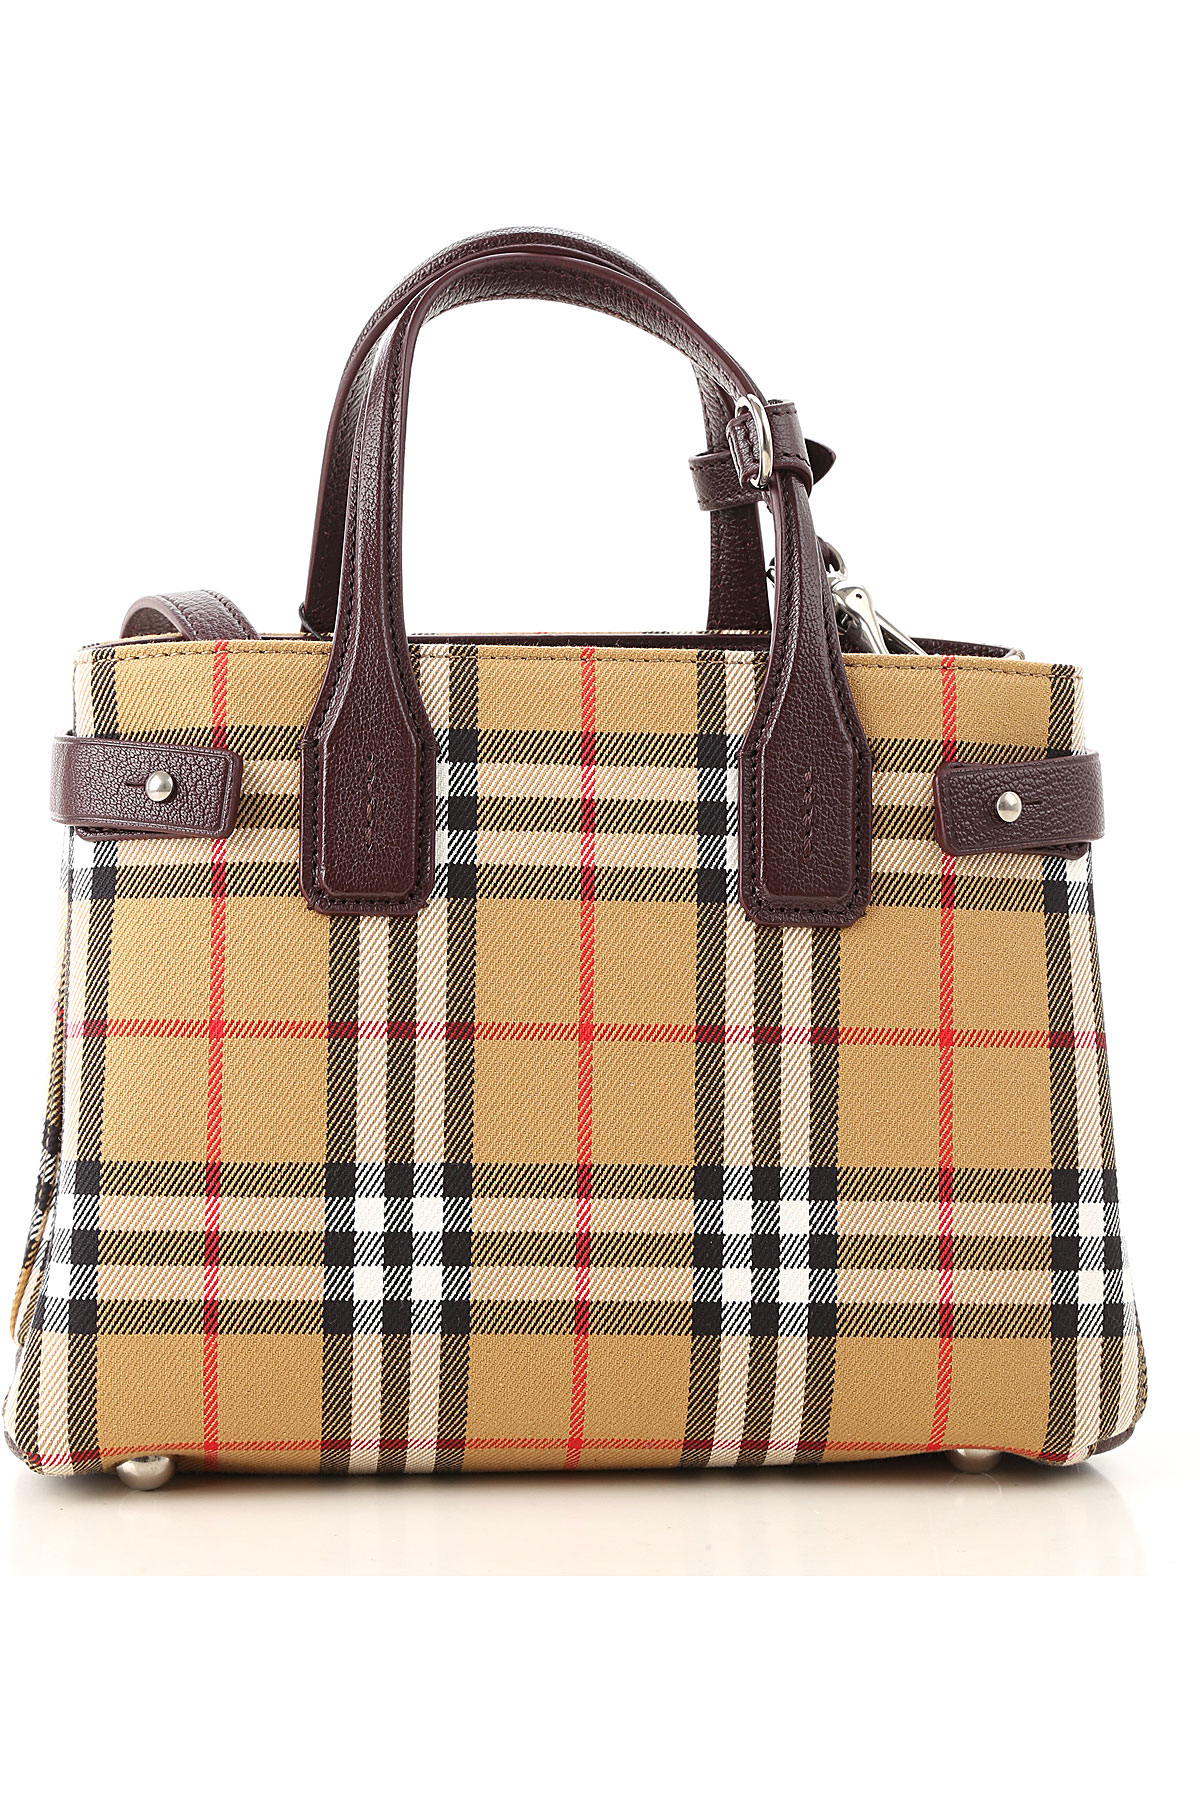 Burberry Bag Handbag | semashow.com